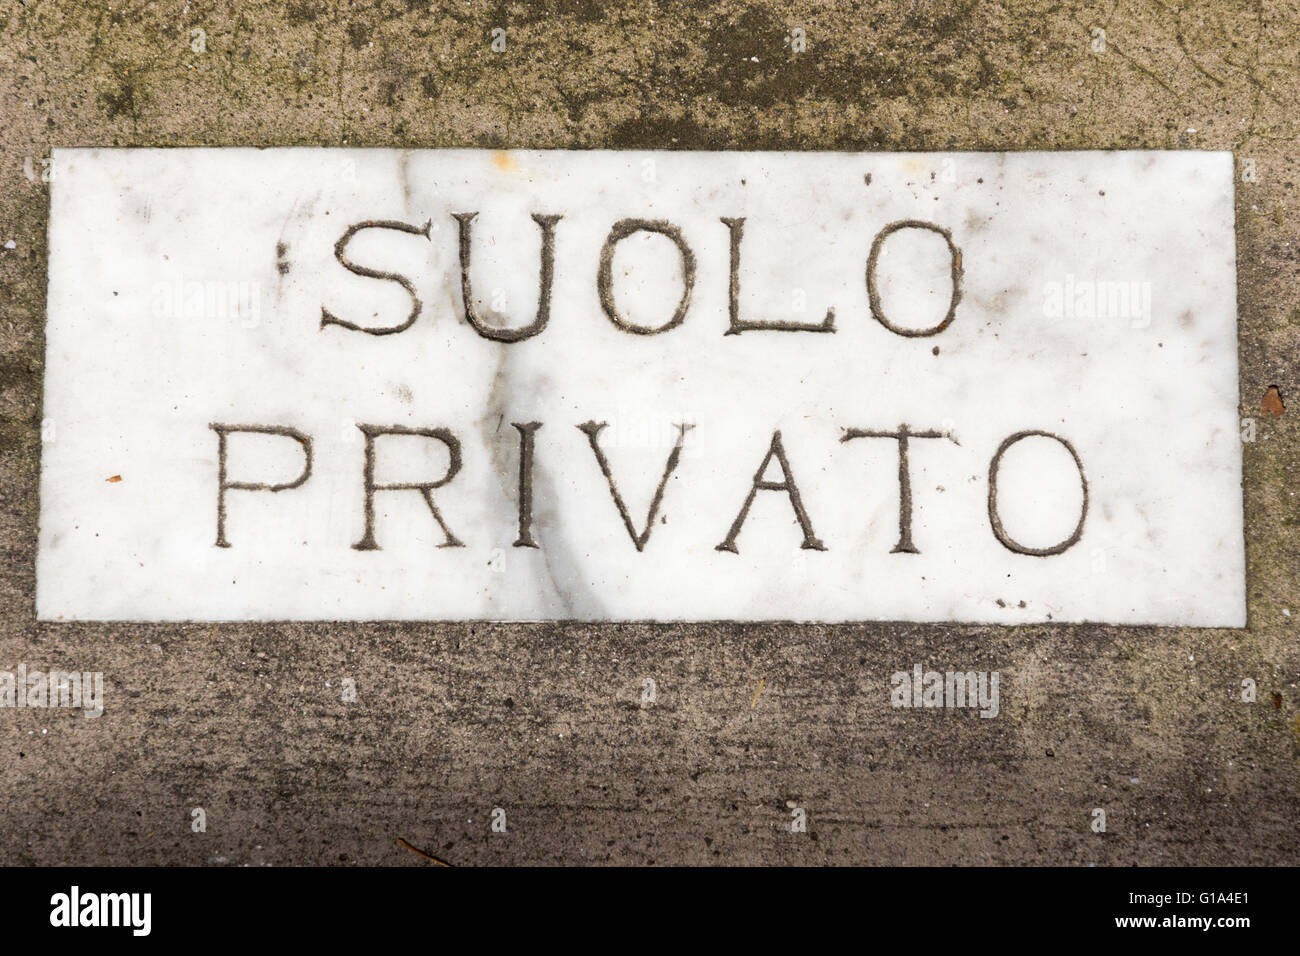 Gravierte Marmor auf dem Bürgersteig mit den Worten Suolo privato auf Italienisch bedeutet "Privateigentum" vor einem Haus in Sorrento, Italien Stockfoto